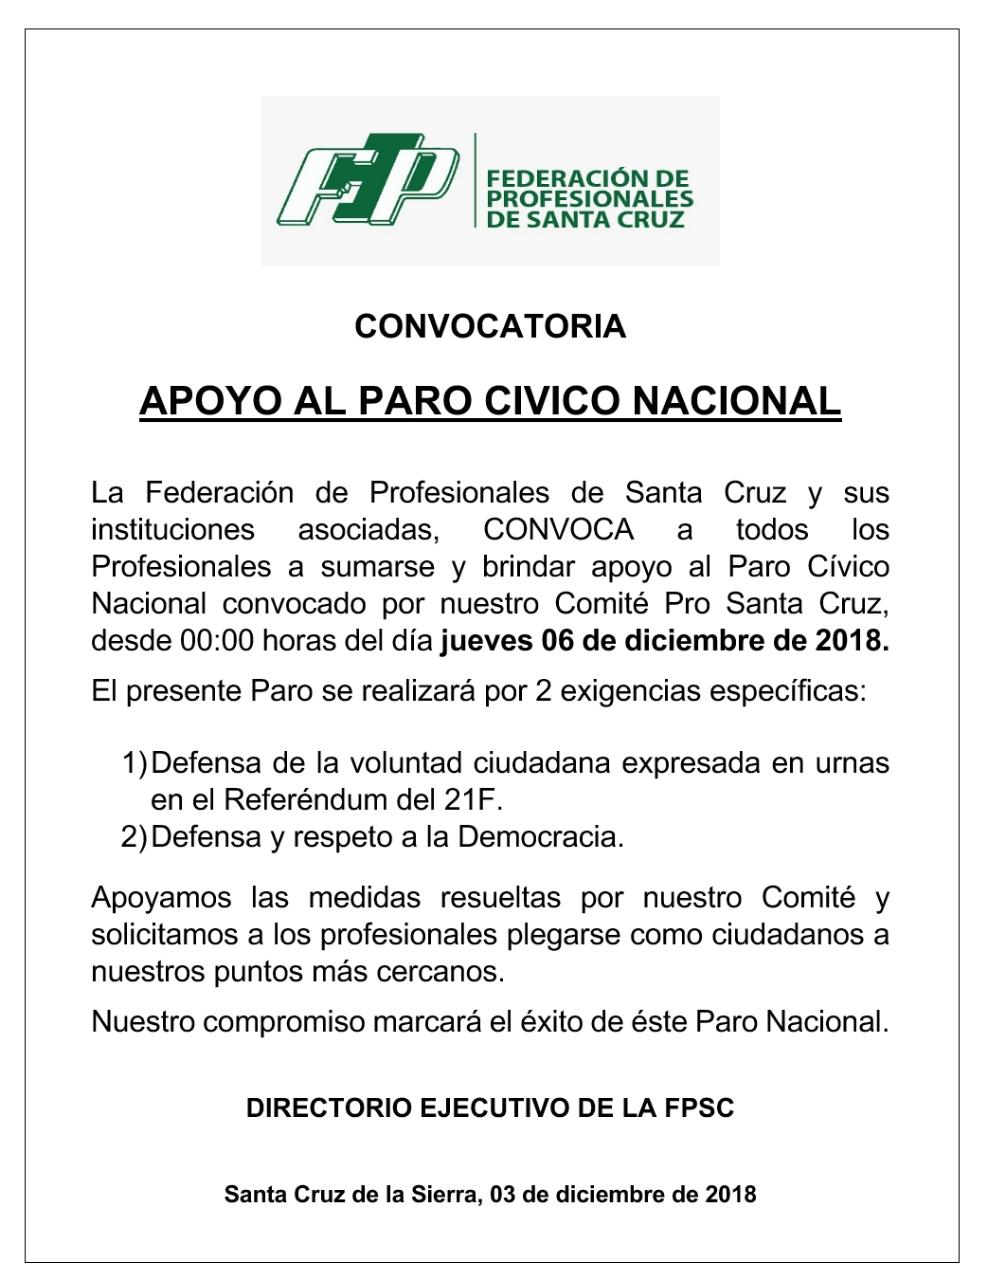 Federación de Profesionales de Santa Cruz convoca a apoyar el paro Cívico Nacional